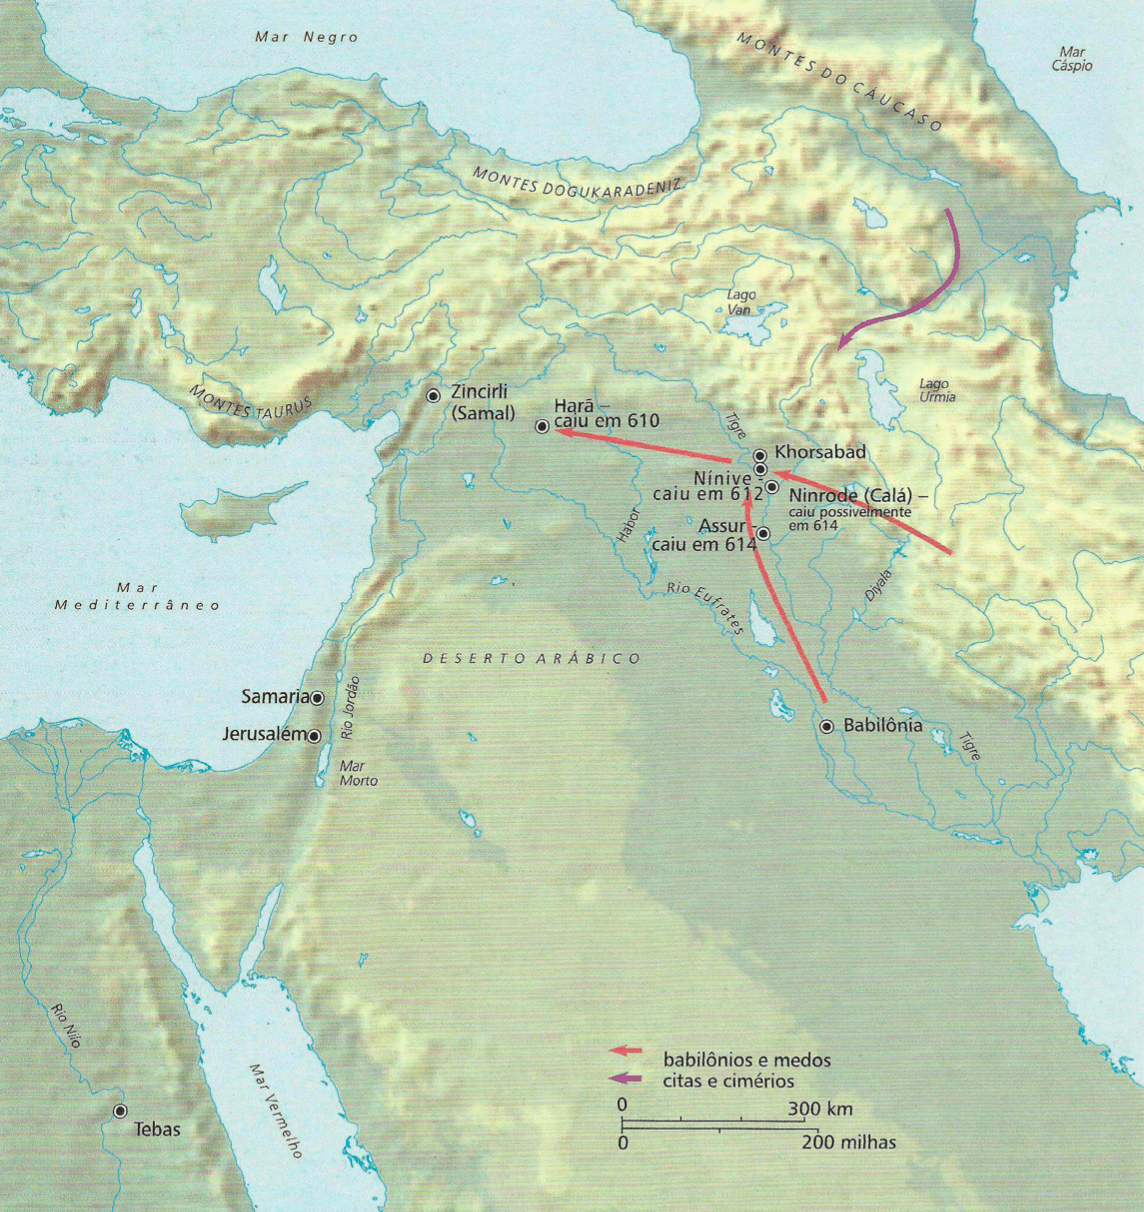 A queda da Assíria No começo do século VII a.C.os citas e cimérios, povos da região sul da atual Rússia, pressionaram a Assíria. Em 612 a.C., Ninive, capital da Assíria, foi tomada pelos babilônios, do sul do atual Iraque, e pelos medos, do atual Irá. Um 